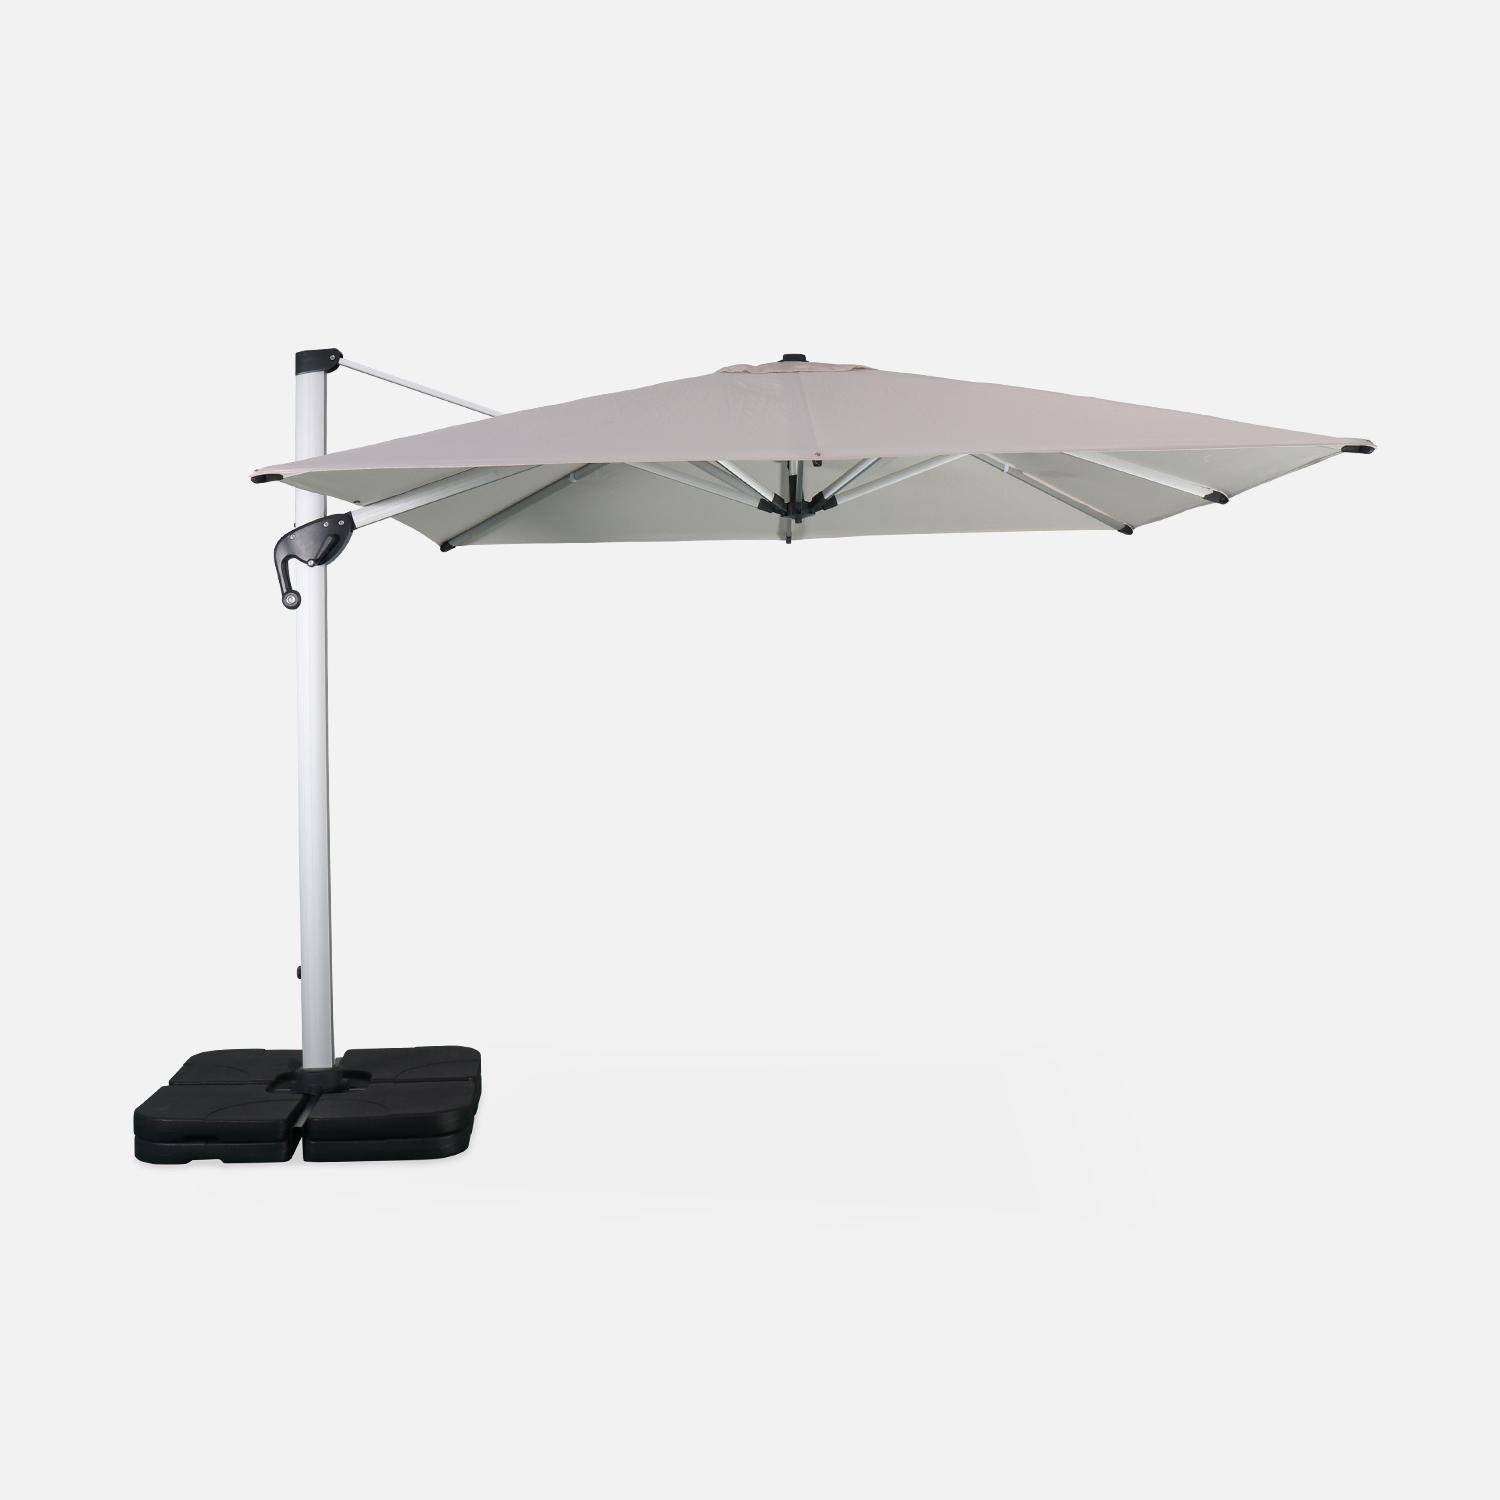 Parasol déporté haut de gamme carré 3x3m – PYLA Beige – Toile Sunbrella fabriquée en France par Dickson , structure en aluminium anodisé, rotatif, housse de protection,sweeek,Photo2